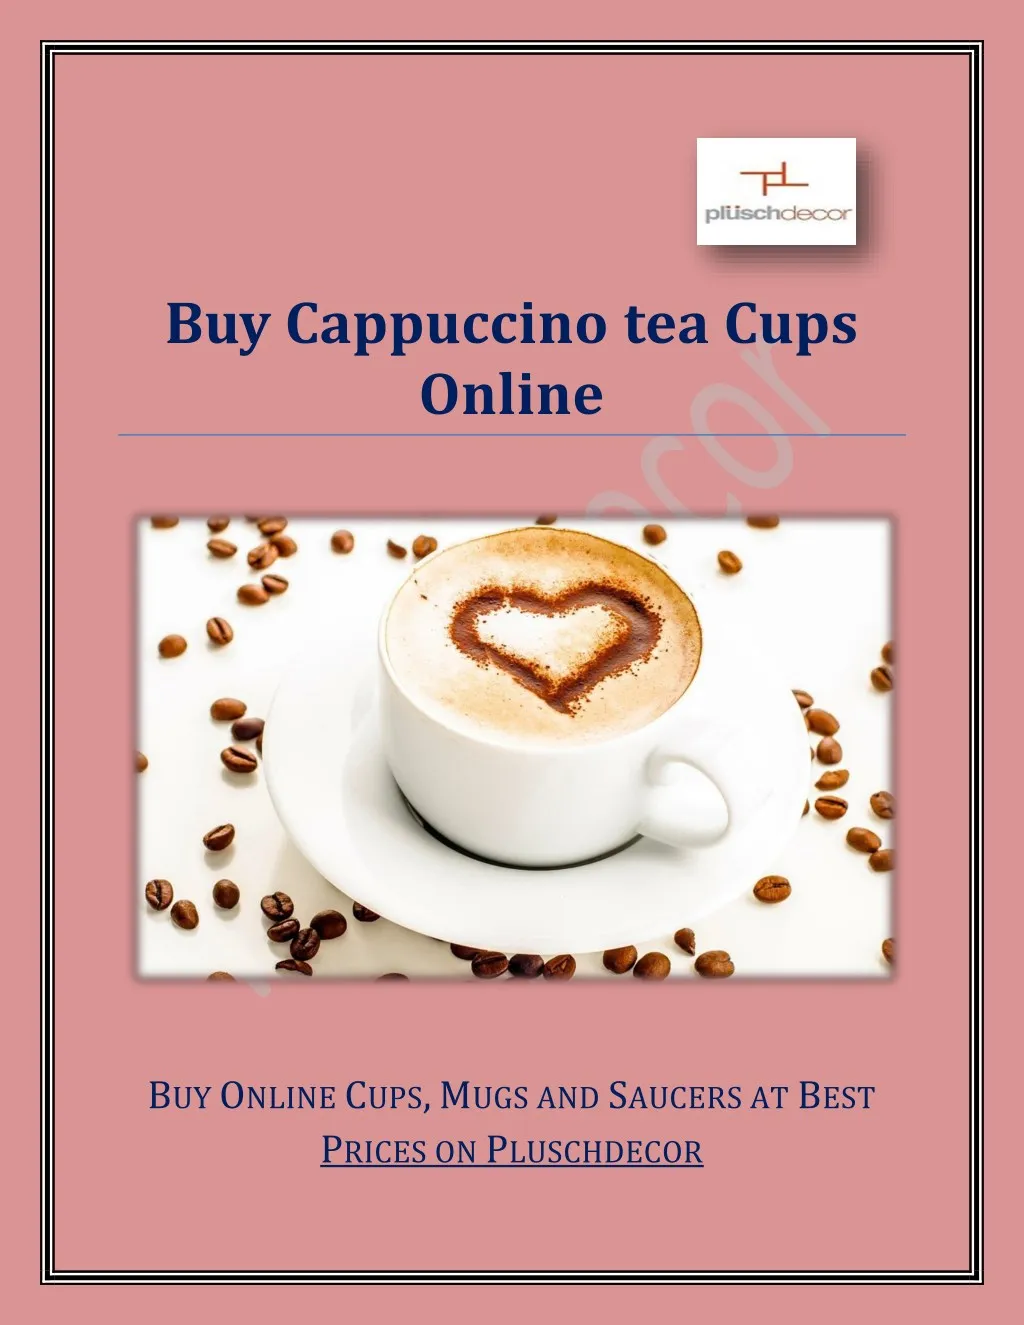 buy cappuccino tea cups online